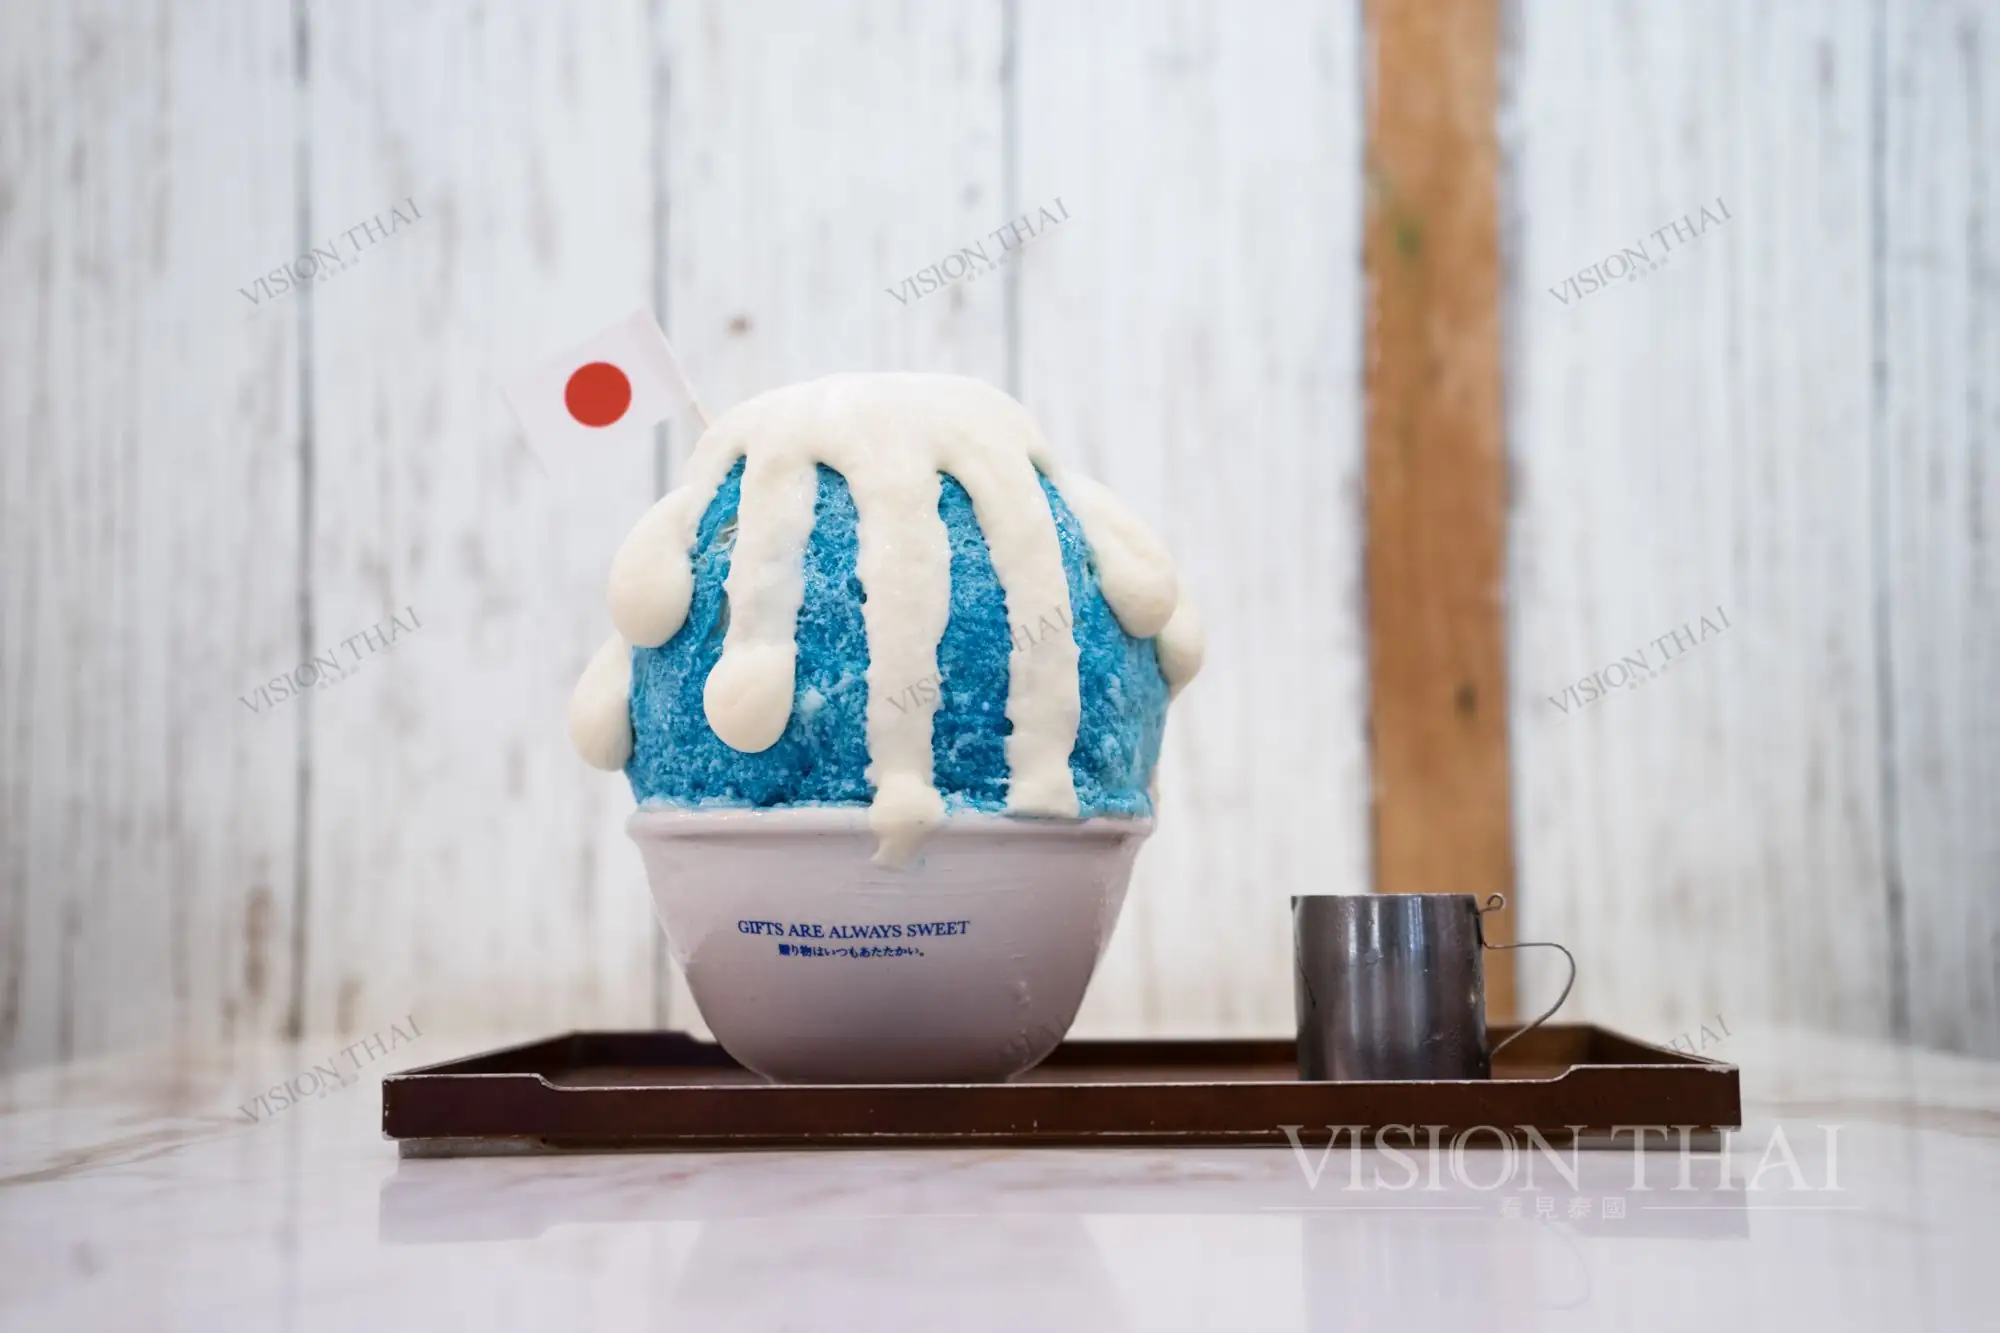 日式甜點店White Day Patisserie以富士山為冰品造型（VISION THAI 看見泰國）